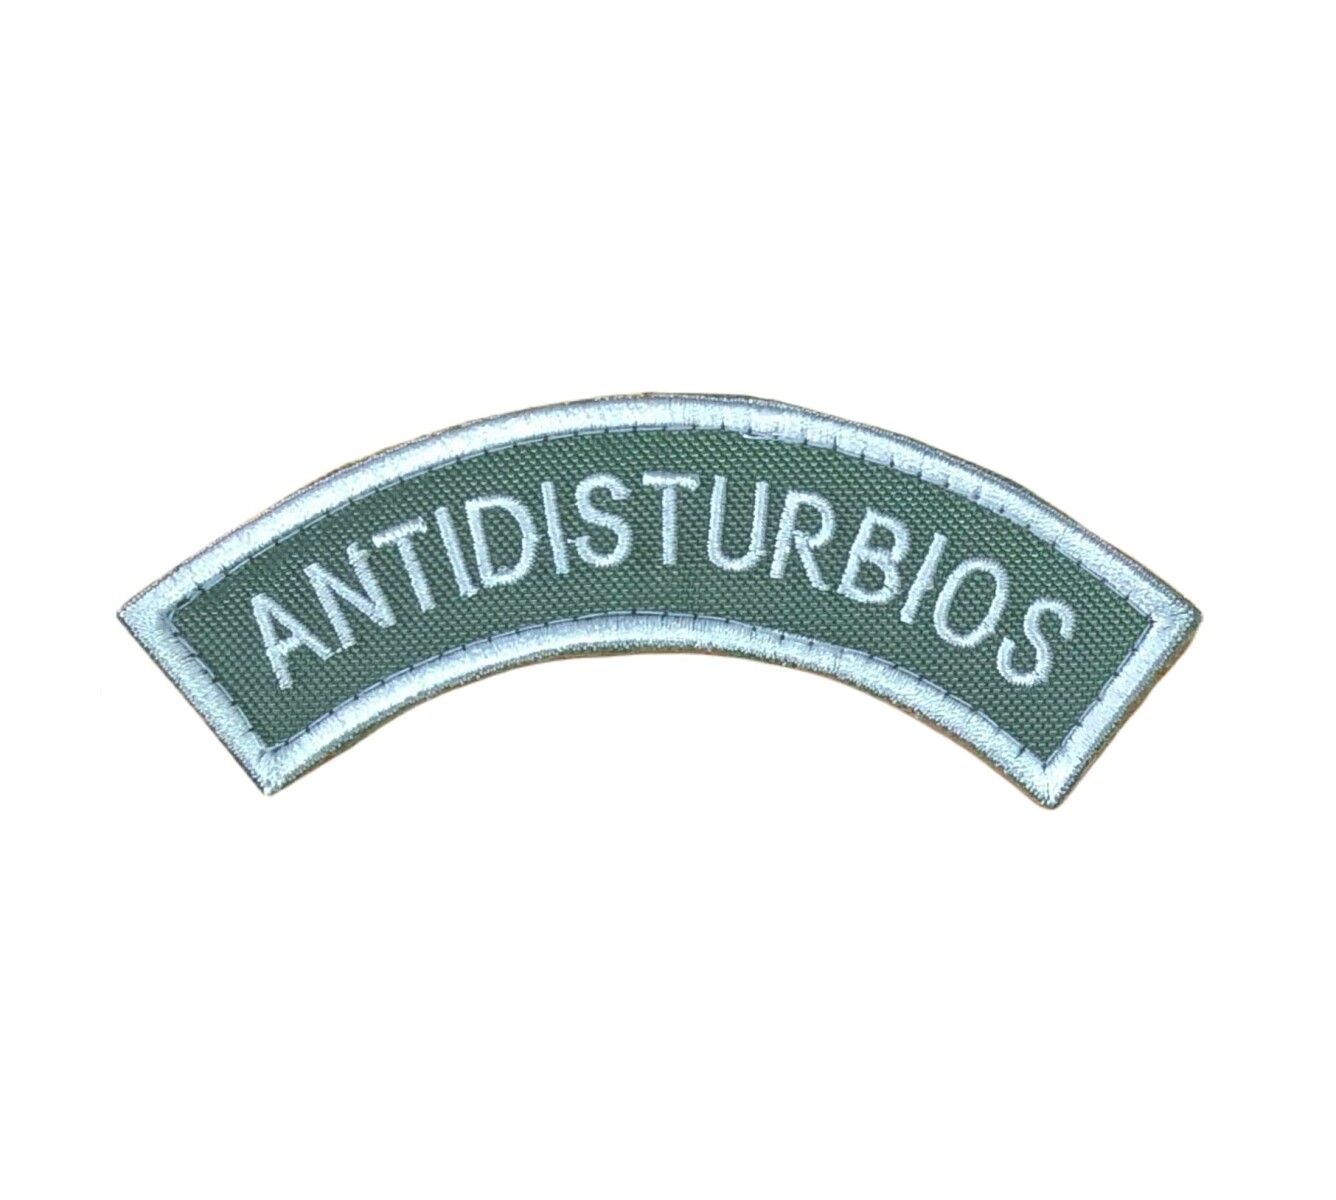 Parche bordado medialuna de brazo - ANTIDISTURBIOS - Verde 